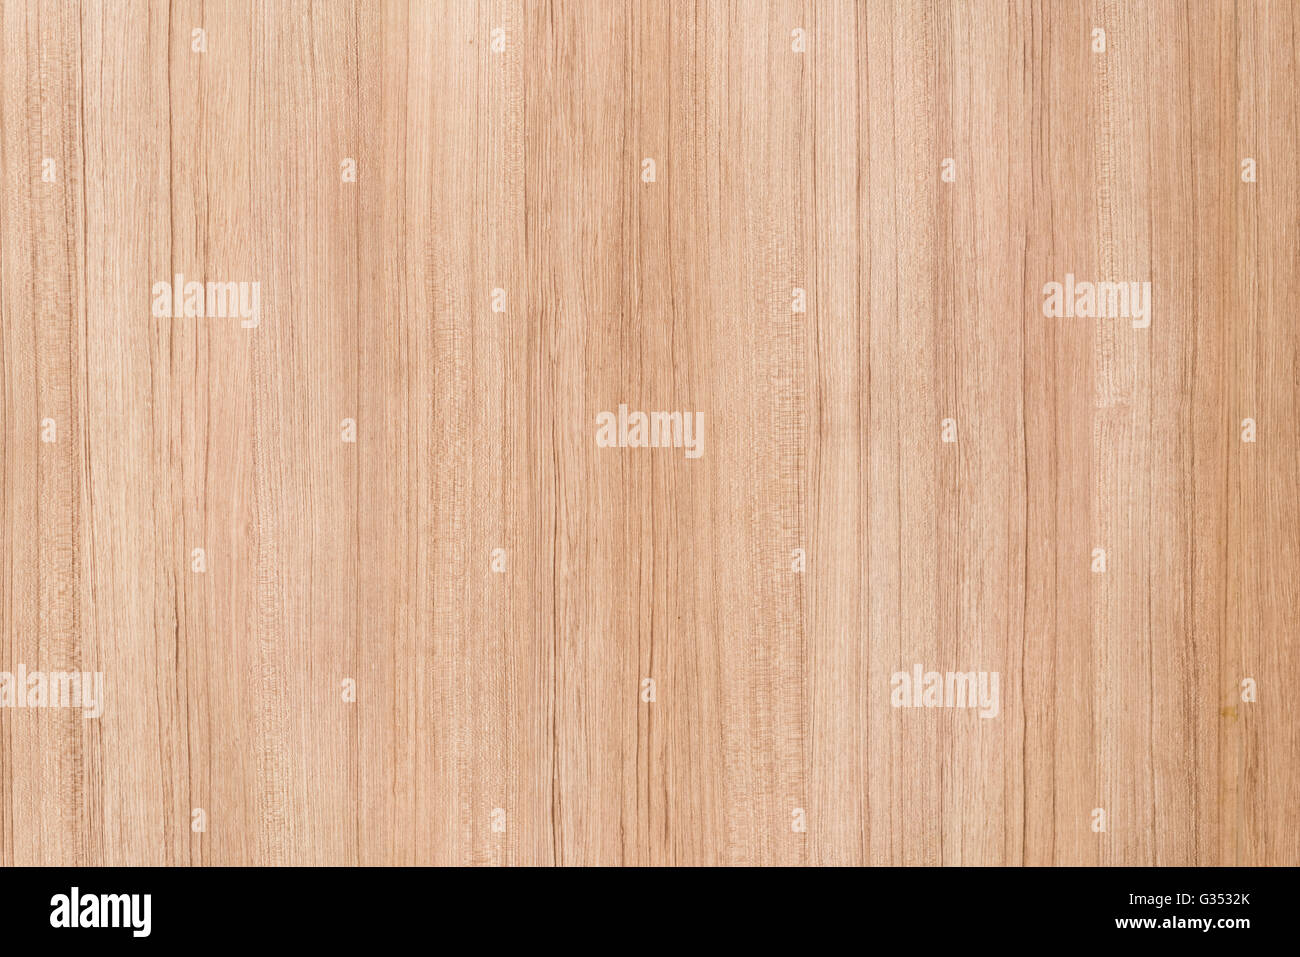 Marrone chiaro legno laminato pavimento o parete texture, immagine di sfondo, tracciato verticale Foto Stock